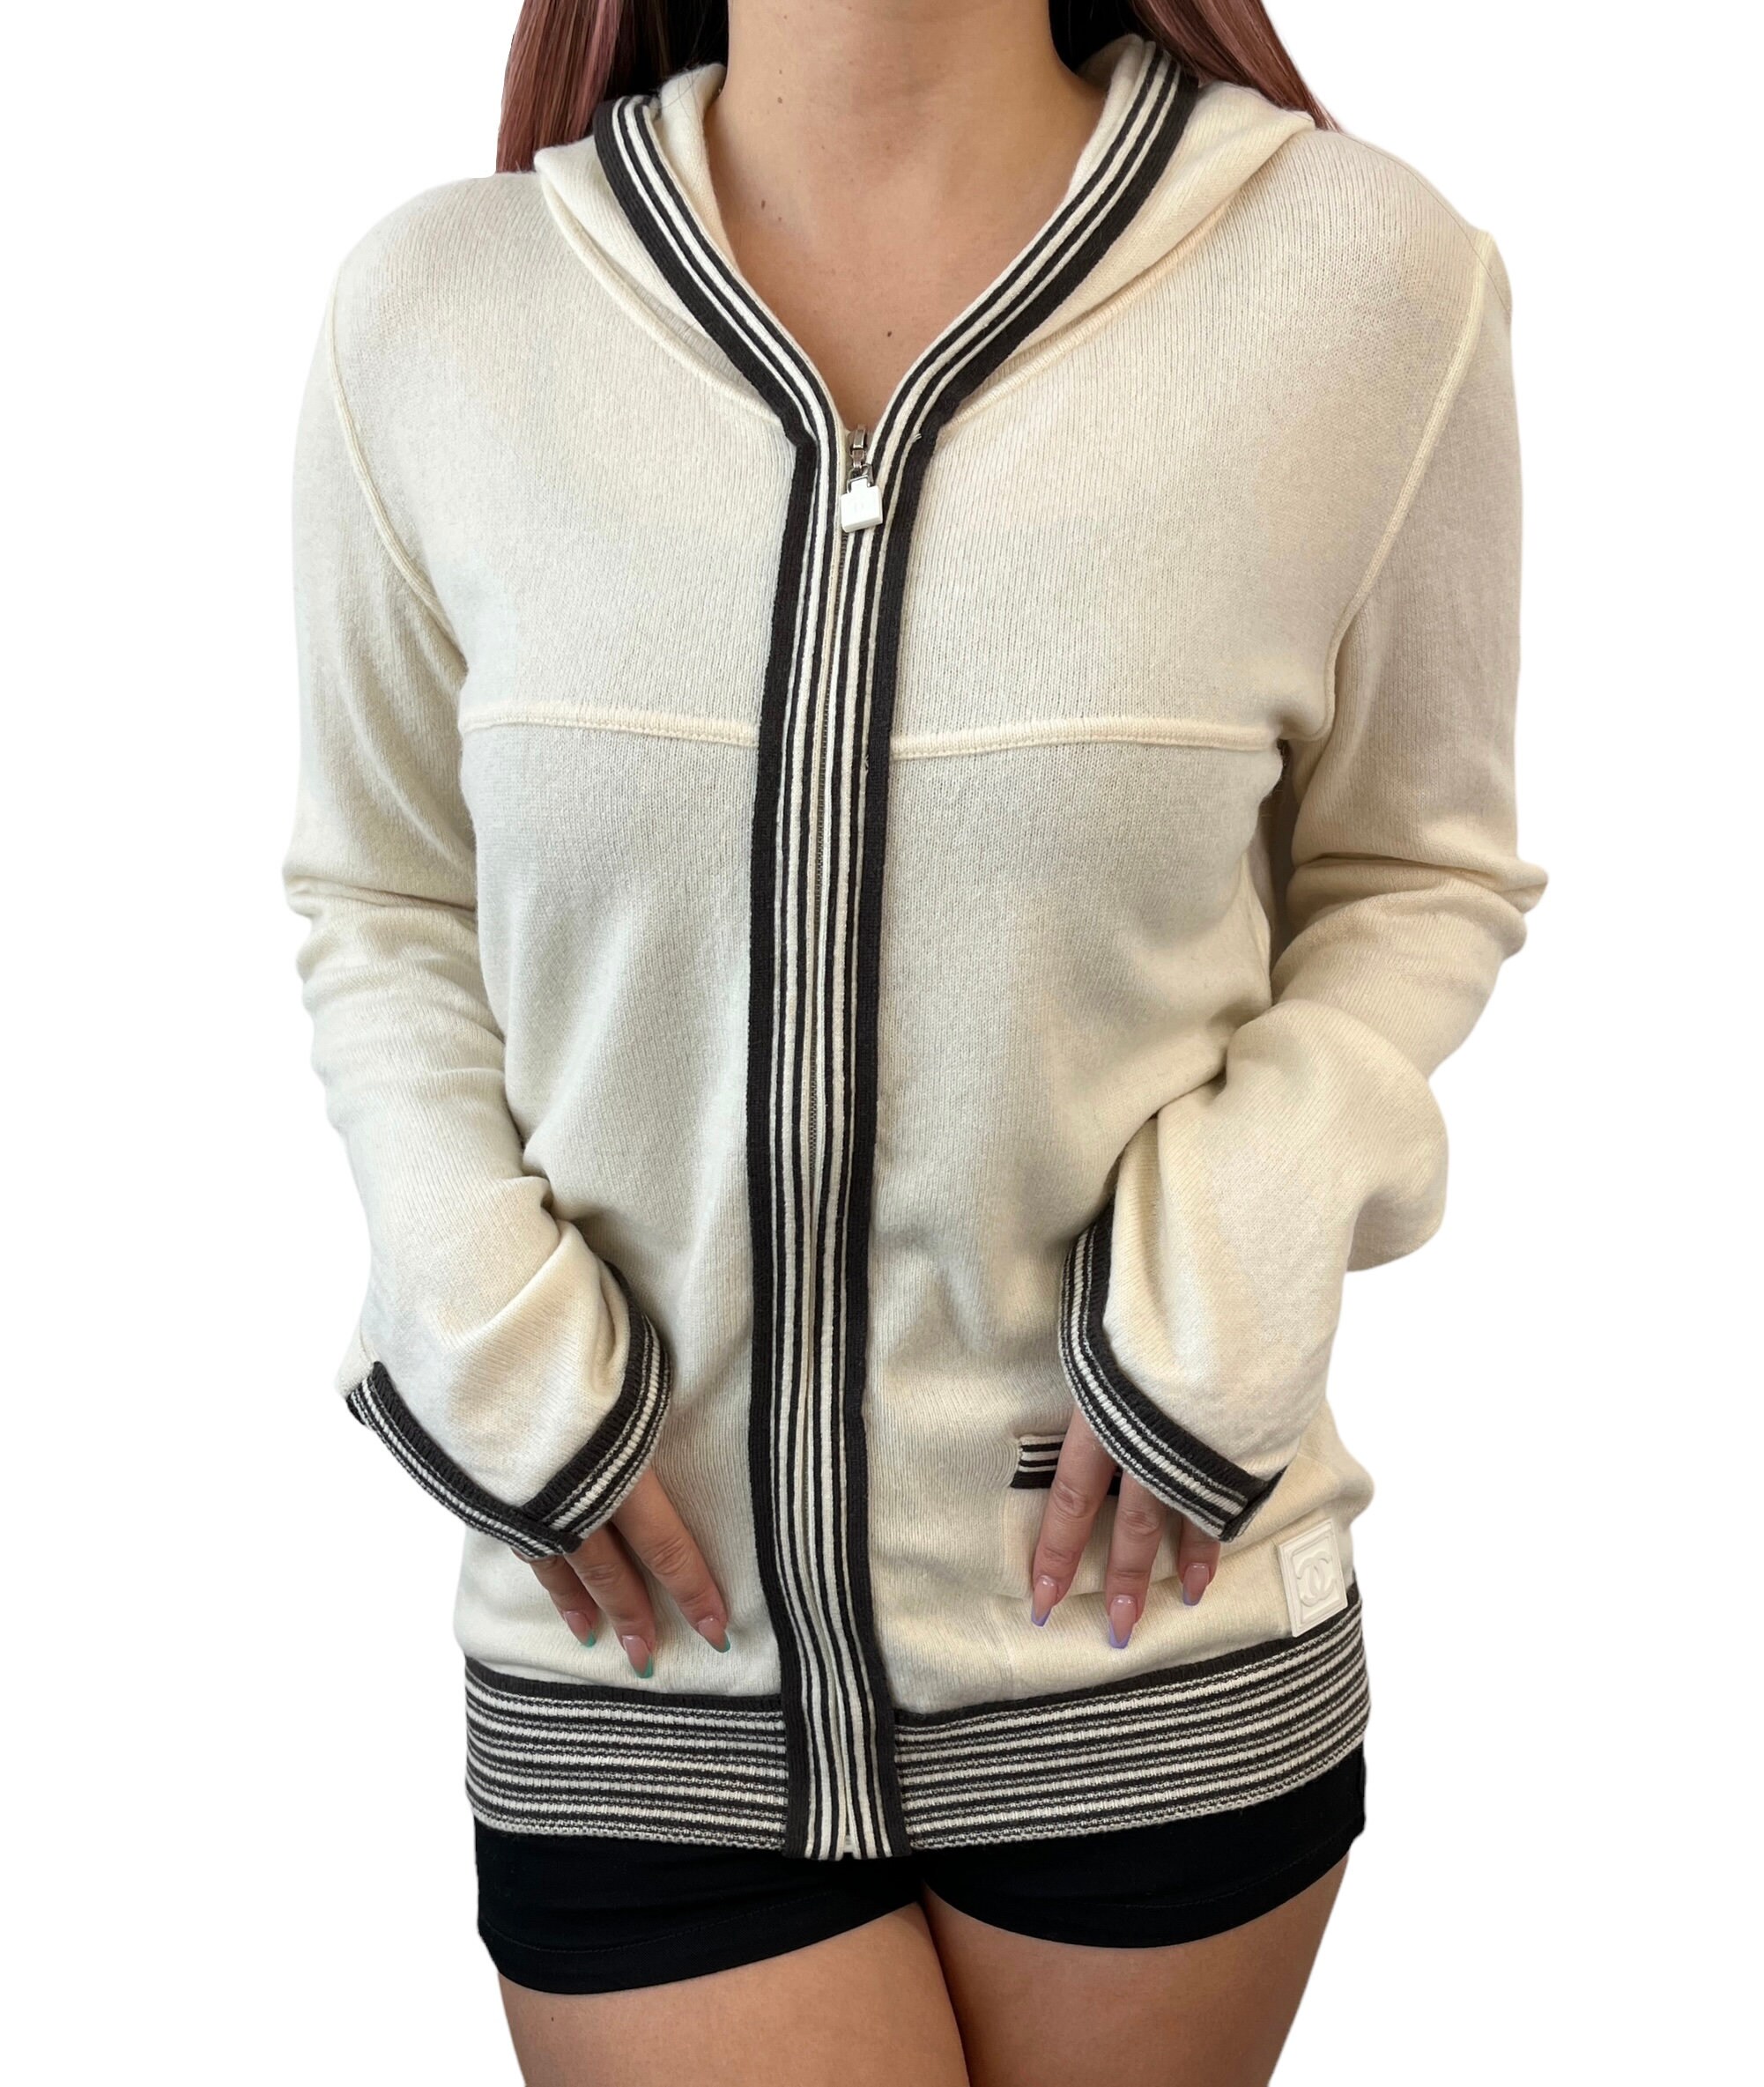 CHANEL Sweatshirts & Hoodies for Women - Poshmark